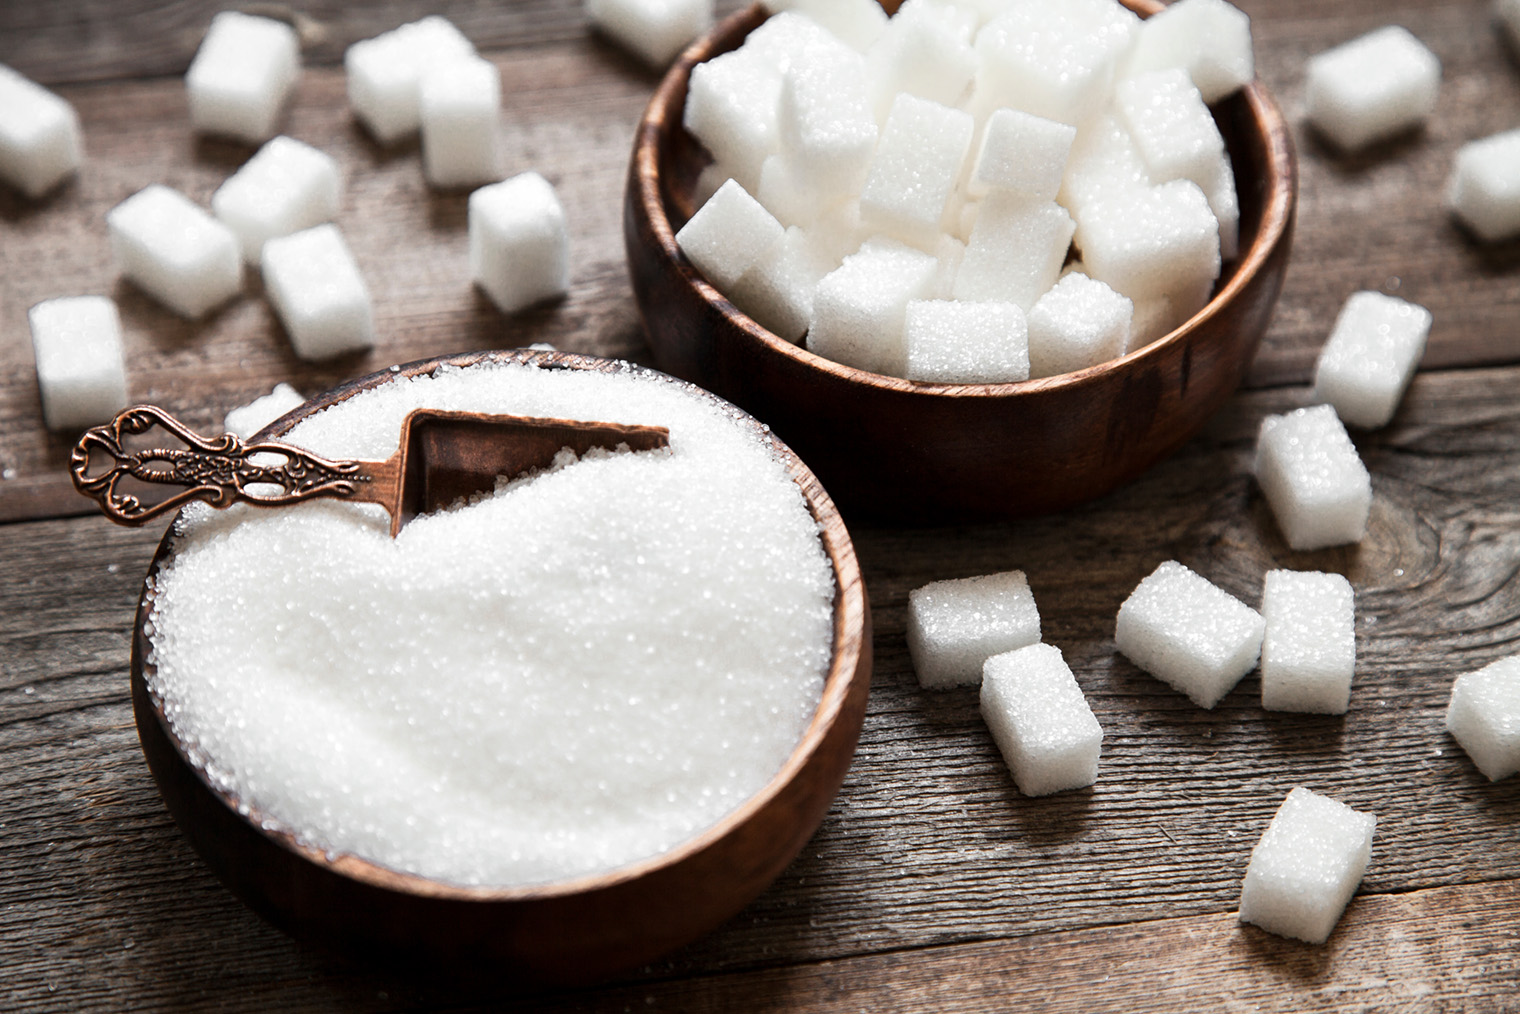 Белый сахар бывает в виде песка и брусочков. Фотография: Busra Ispir / Shutterstock / FOTODOM